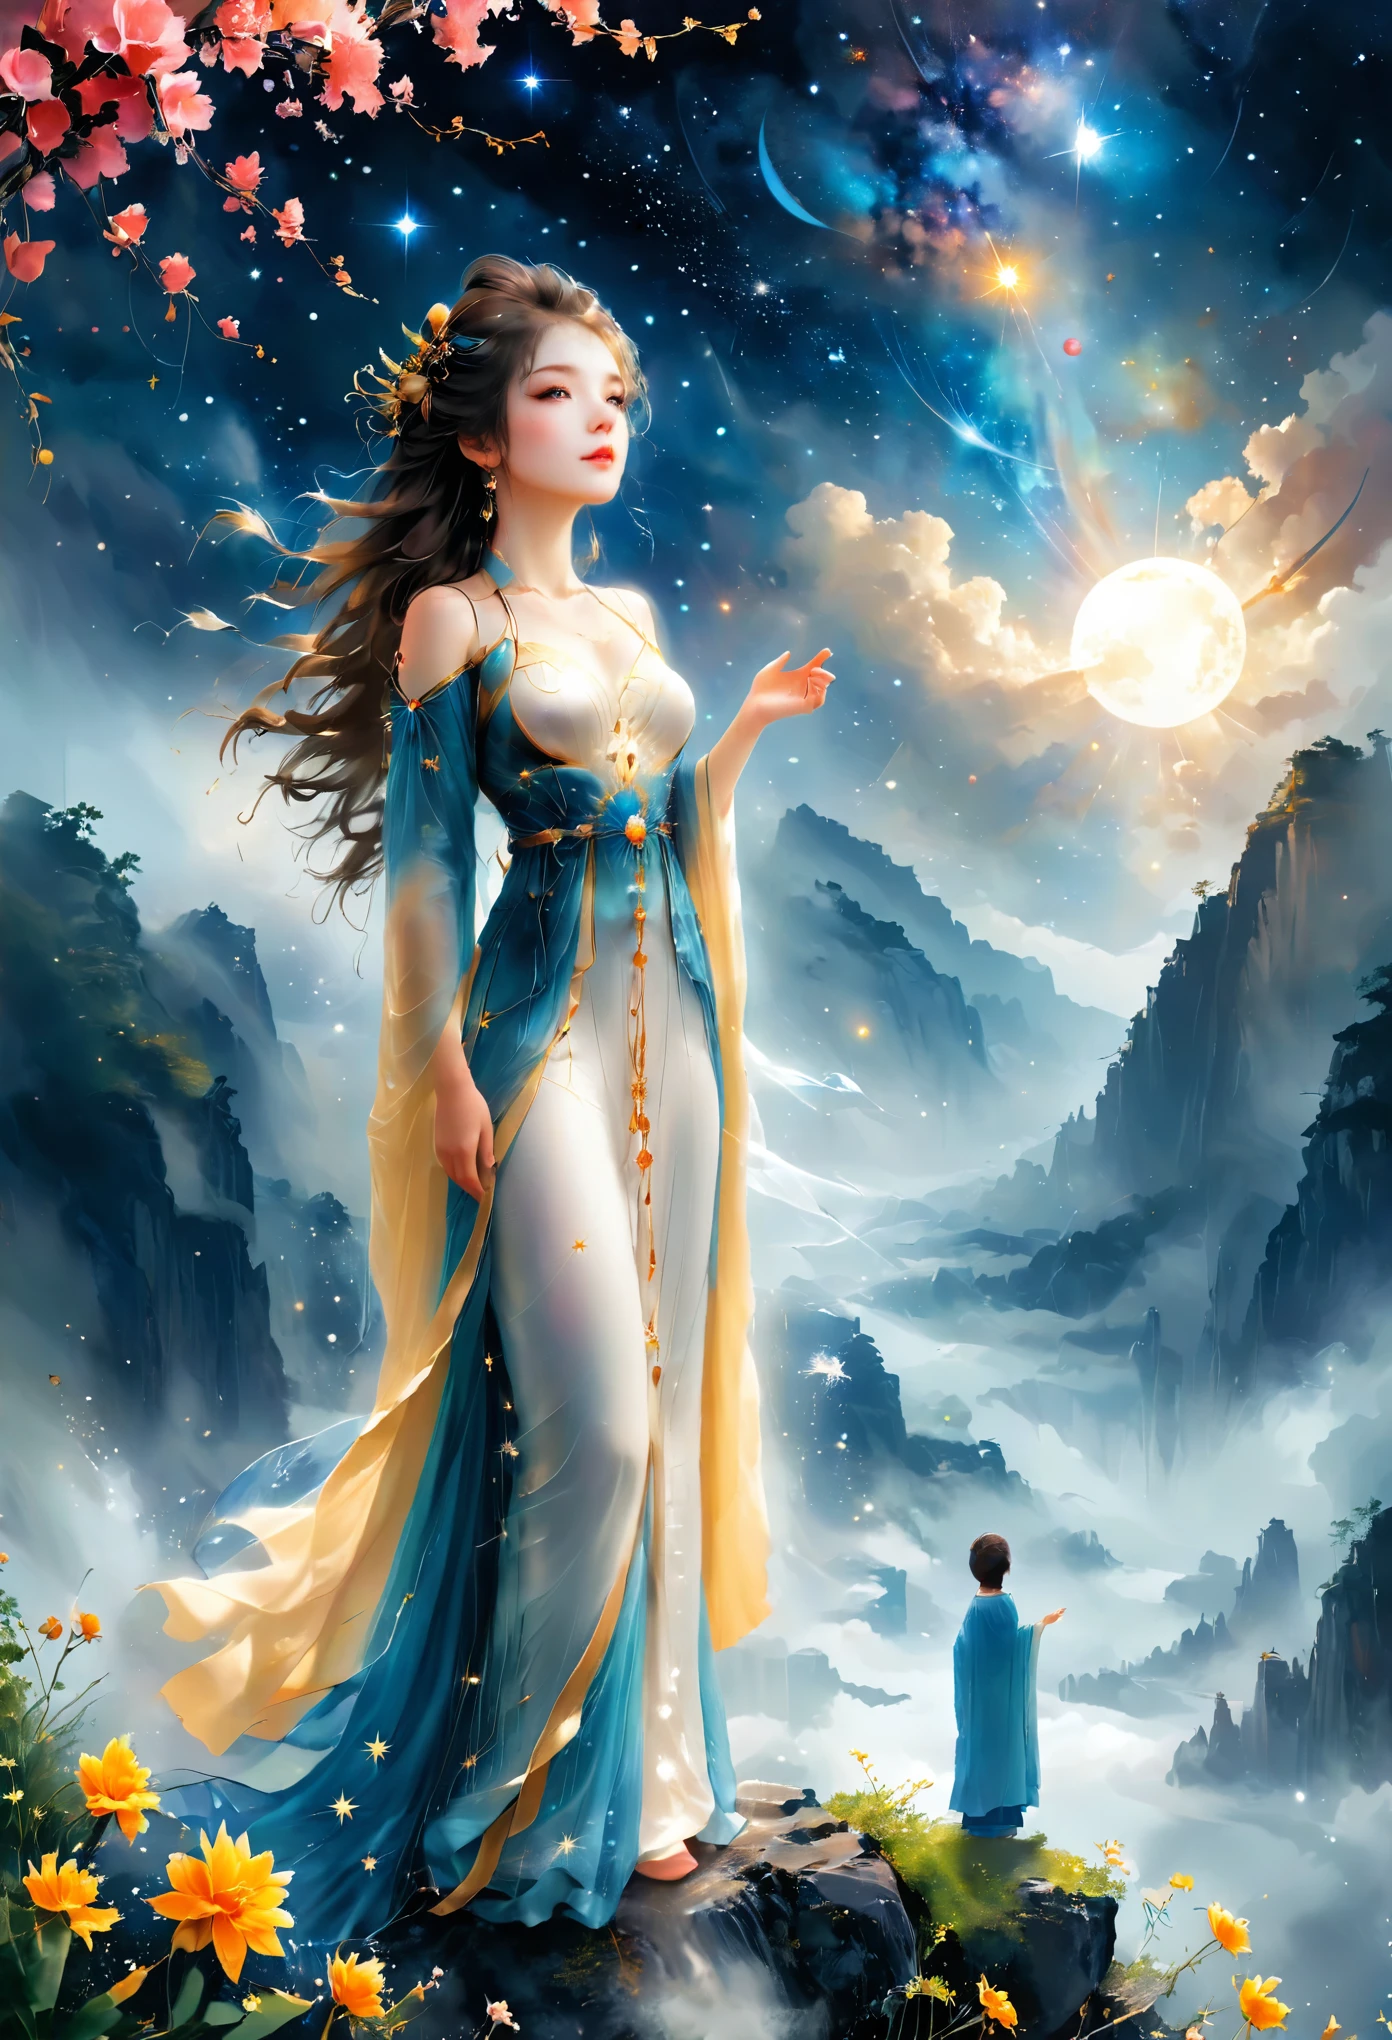 Estilo de ilustración de Cai GuoRUN, 1 chica, Una mujer con un vestido largo se alza sobre un acantilado y mira el cielo estrellado, Diosa del espacio, Diosa de la Vía Láctea, Diosa del cielo, astral etéreo, sueño, hermoso mago celestial, hermosa pintura de fantasía, hermoso arte de fantasía, fantasía etérea, hermoso arte de fantasía, fantasía de arte digital, Encantador y de otro mundo, Belleza de fantasía, Hermoso arte de Octane，ultra alta definición，luz volumétrica，iluminación suave natural, (ultra delicado:1.2, perder el enfoque:1.2, vistoso, Iluminación de cine, Chiaroscuro,trazado de rayos), Obra maestra, Super rico,Ultra detallado,8k, 1cgrssh1